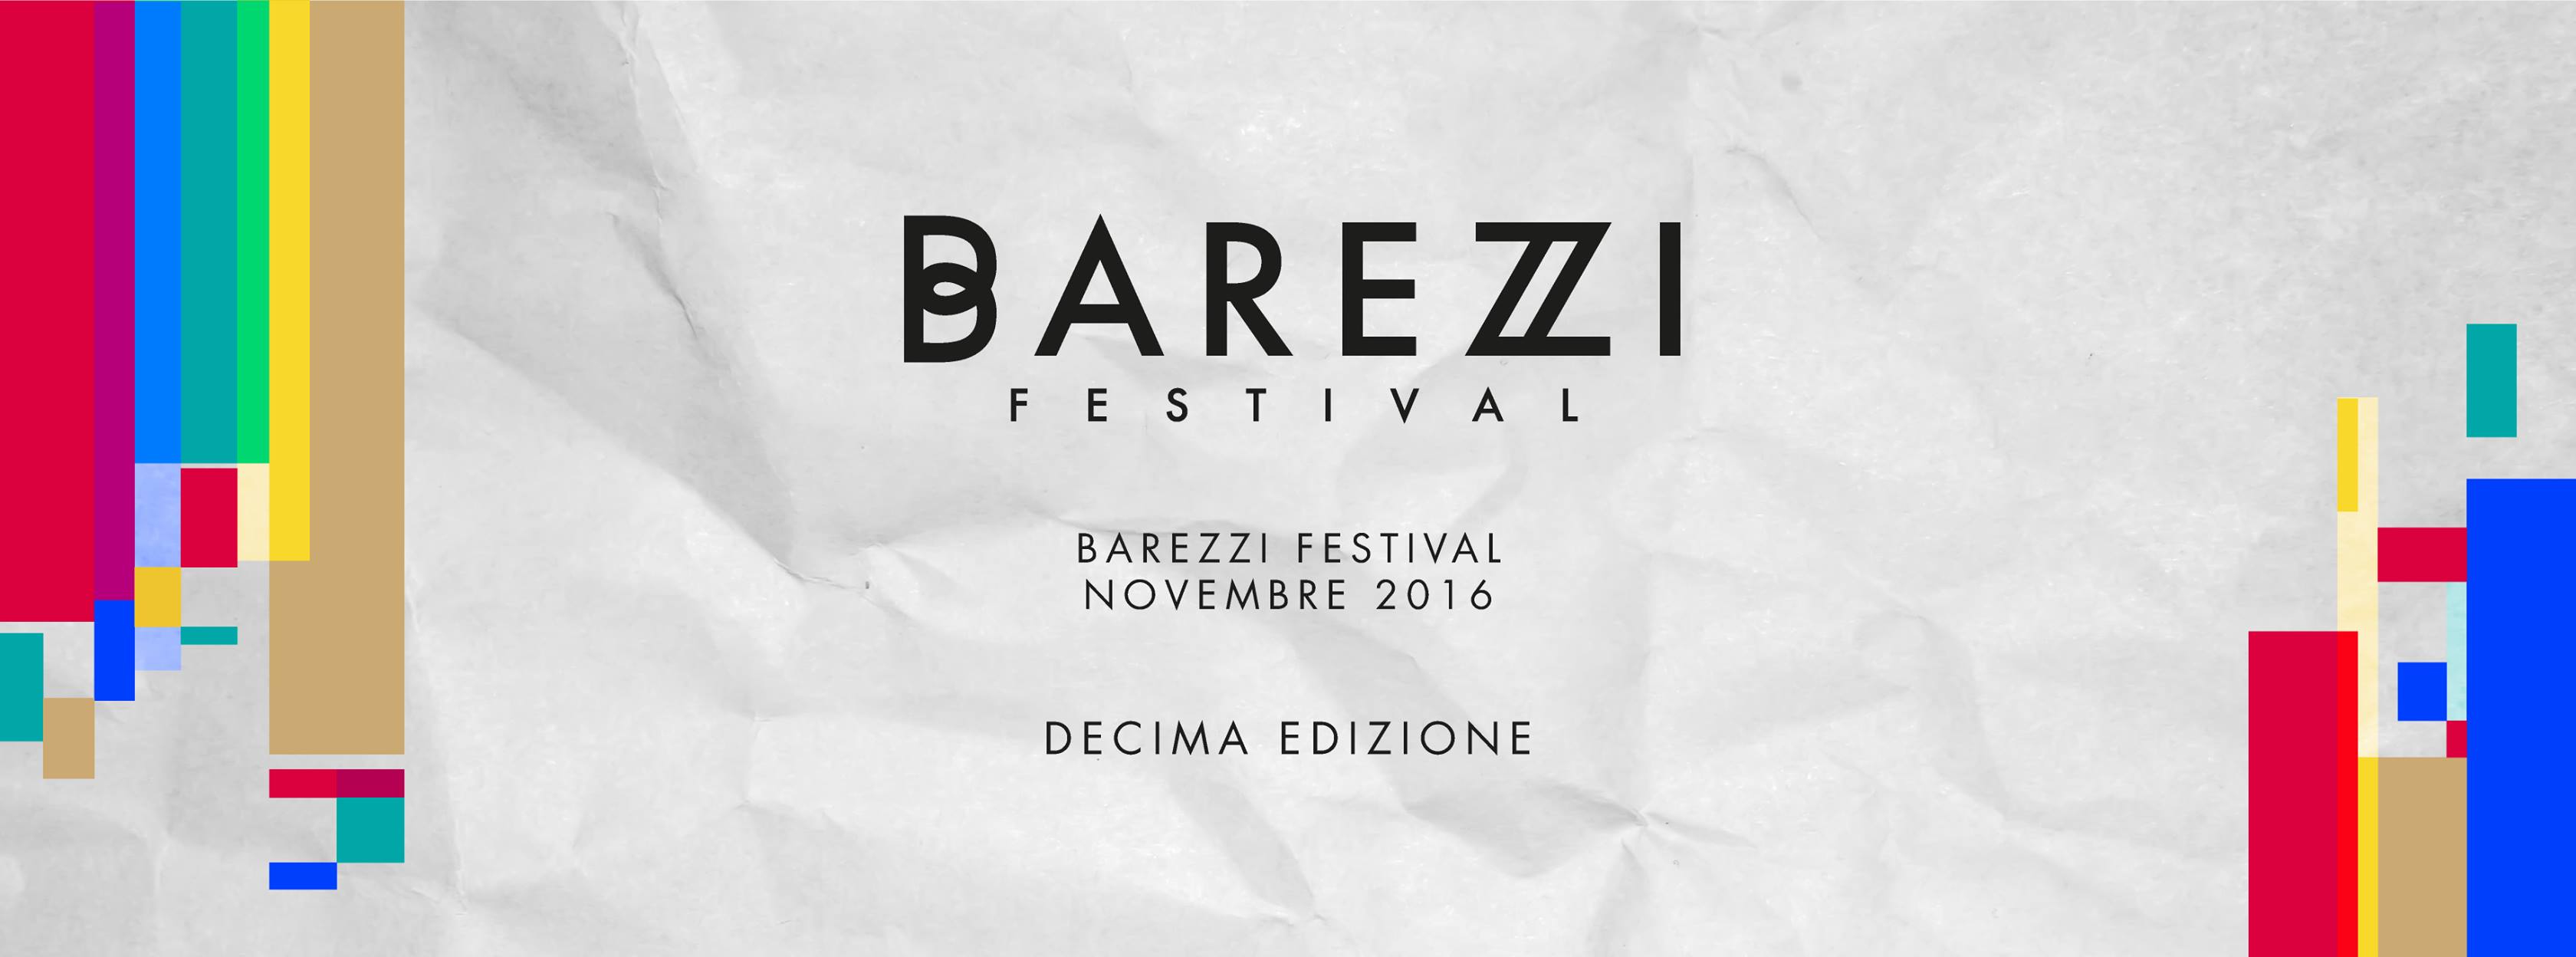 baresi festival 2016